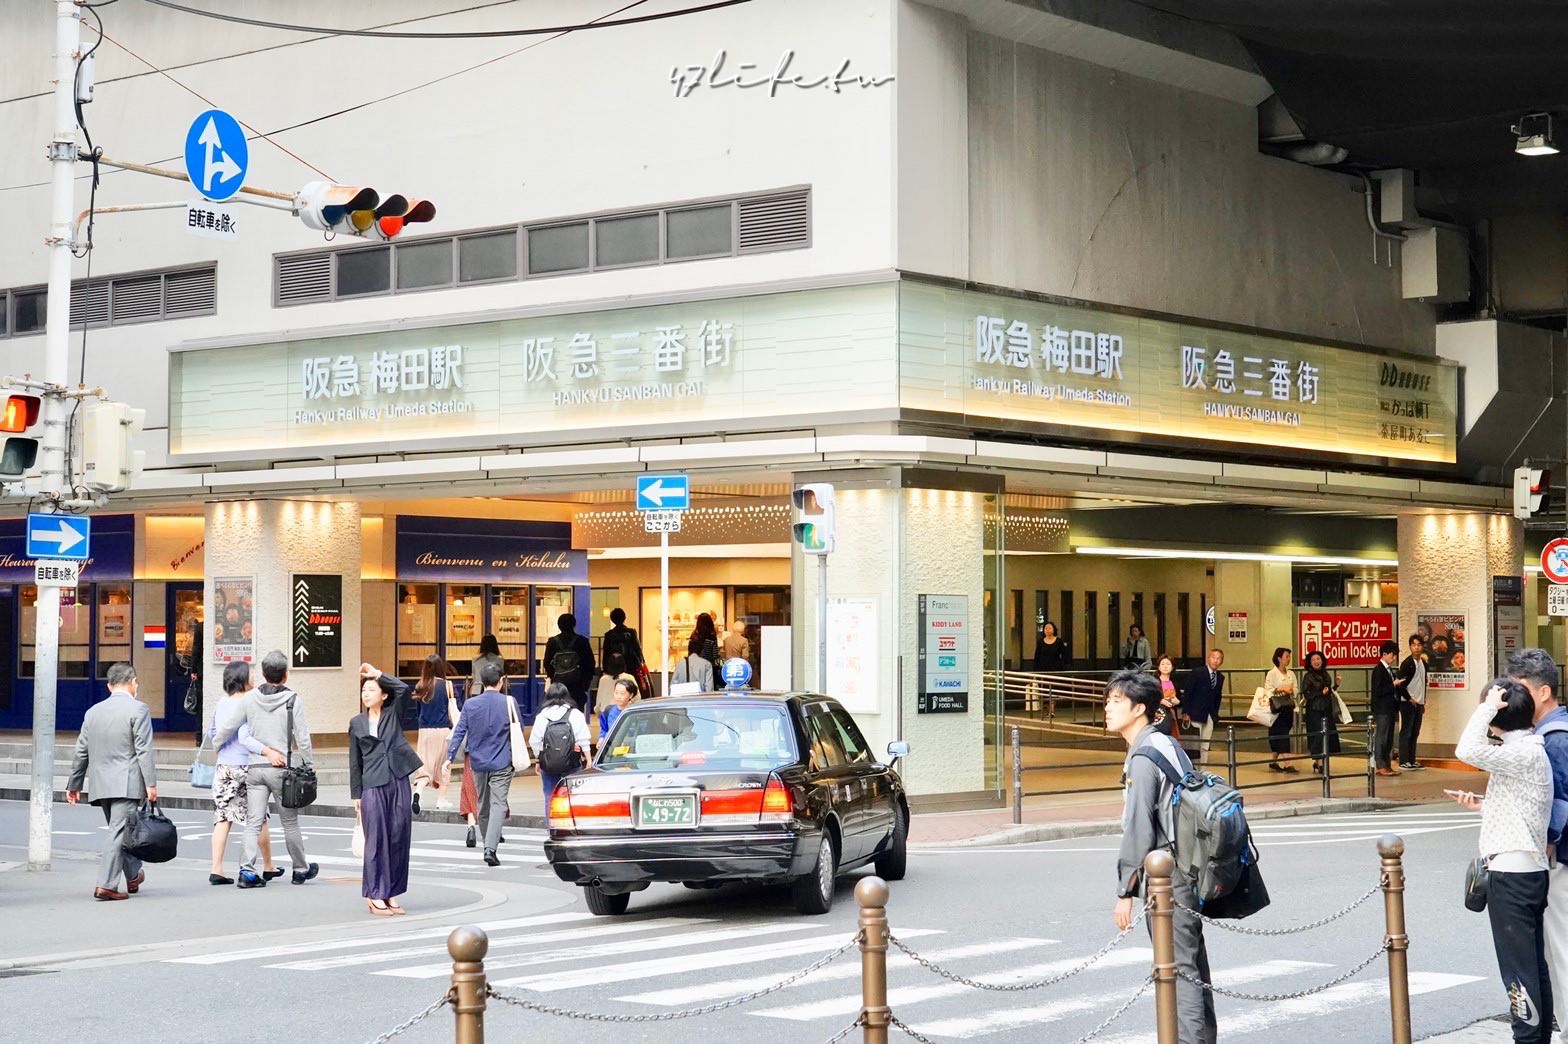 [大阪-->有馬溫泉 最便捷交通] 阪急高速巴士搭乘體驗 (附訂票教學) | 日本 | 關西 | 旅行酒吧